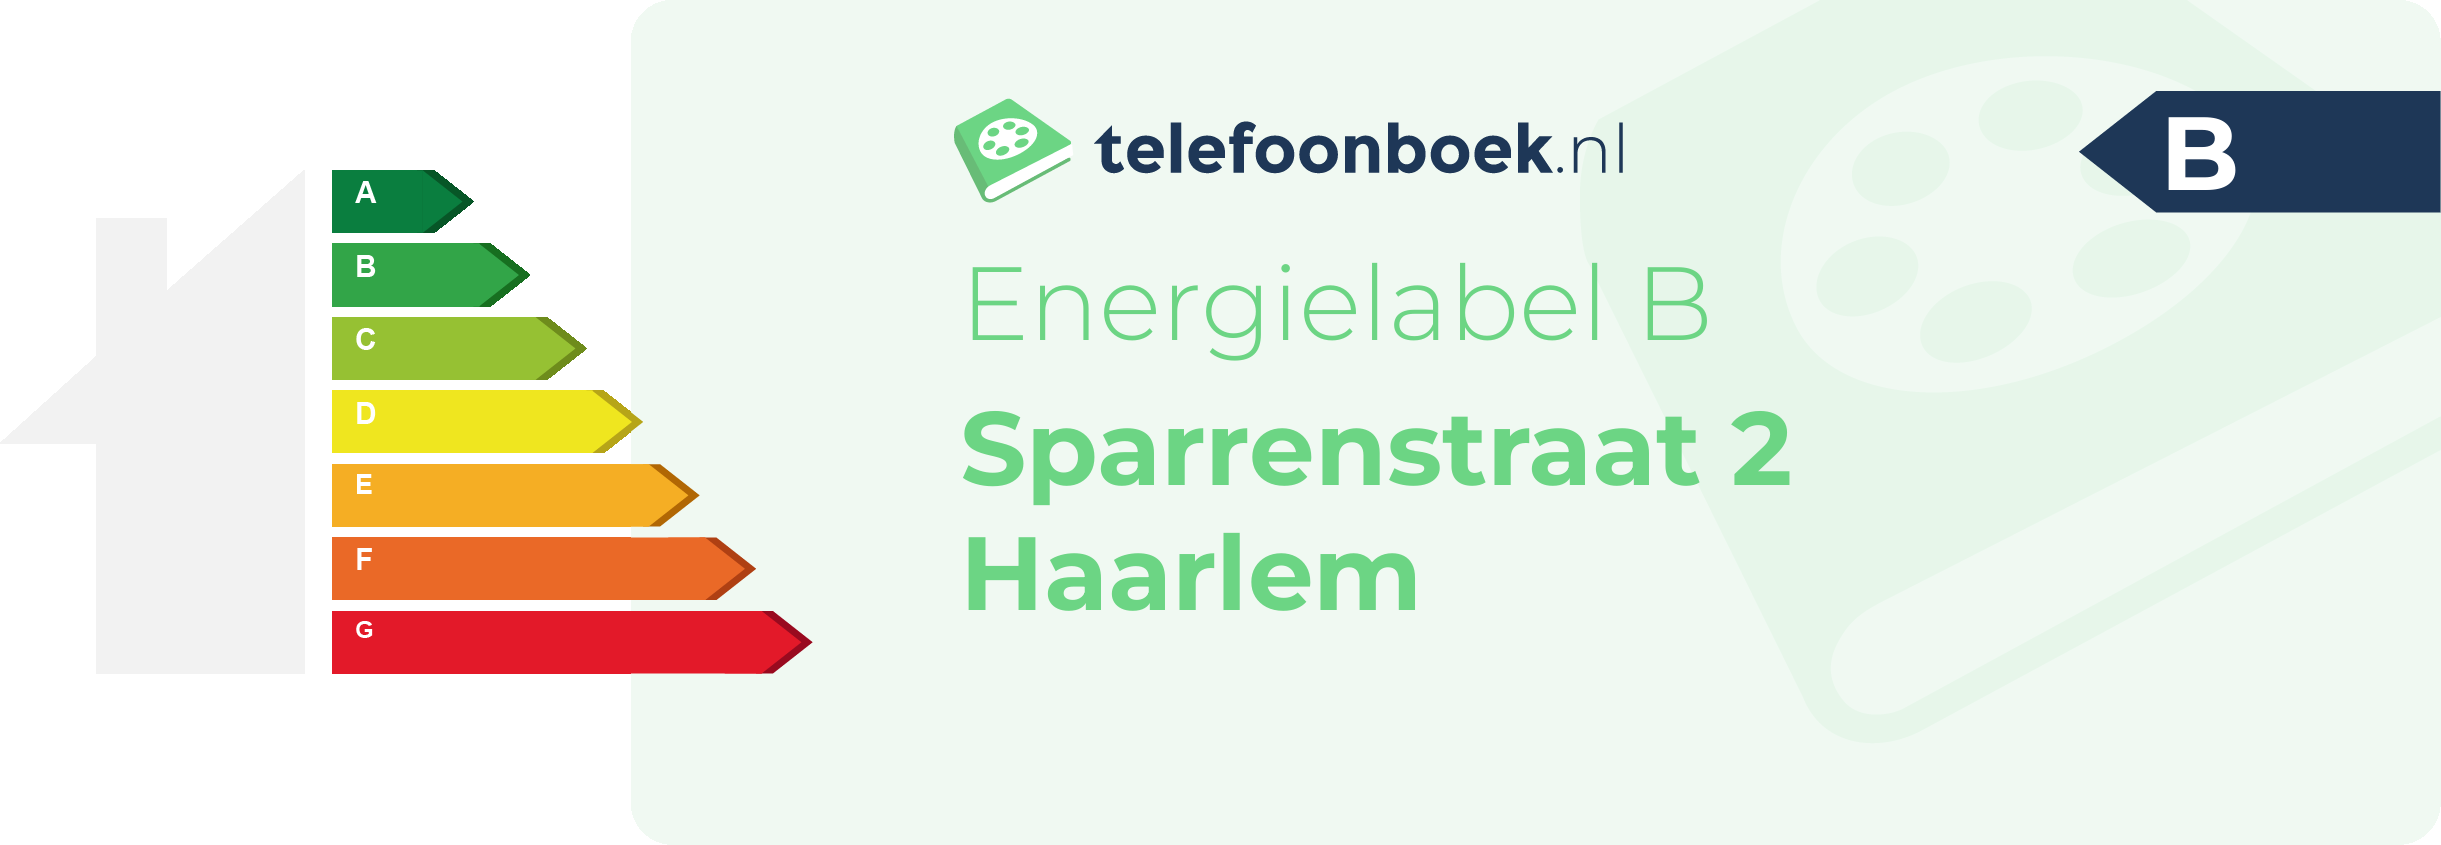 Energielabel Sparrenstraat 2 Haarlem